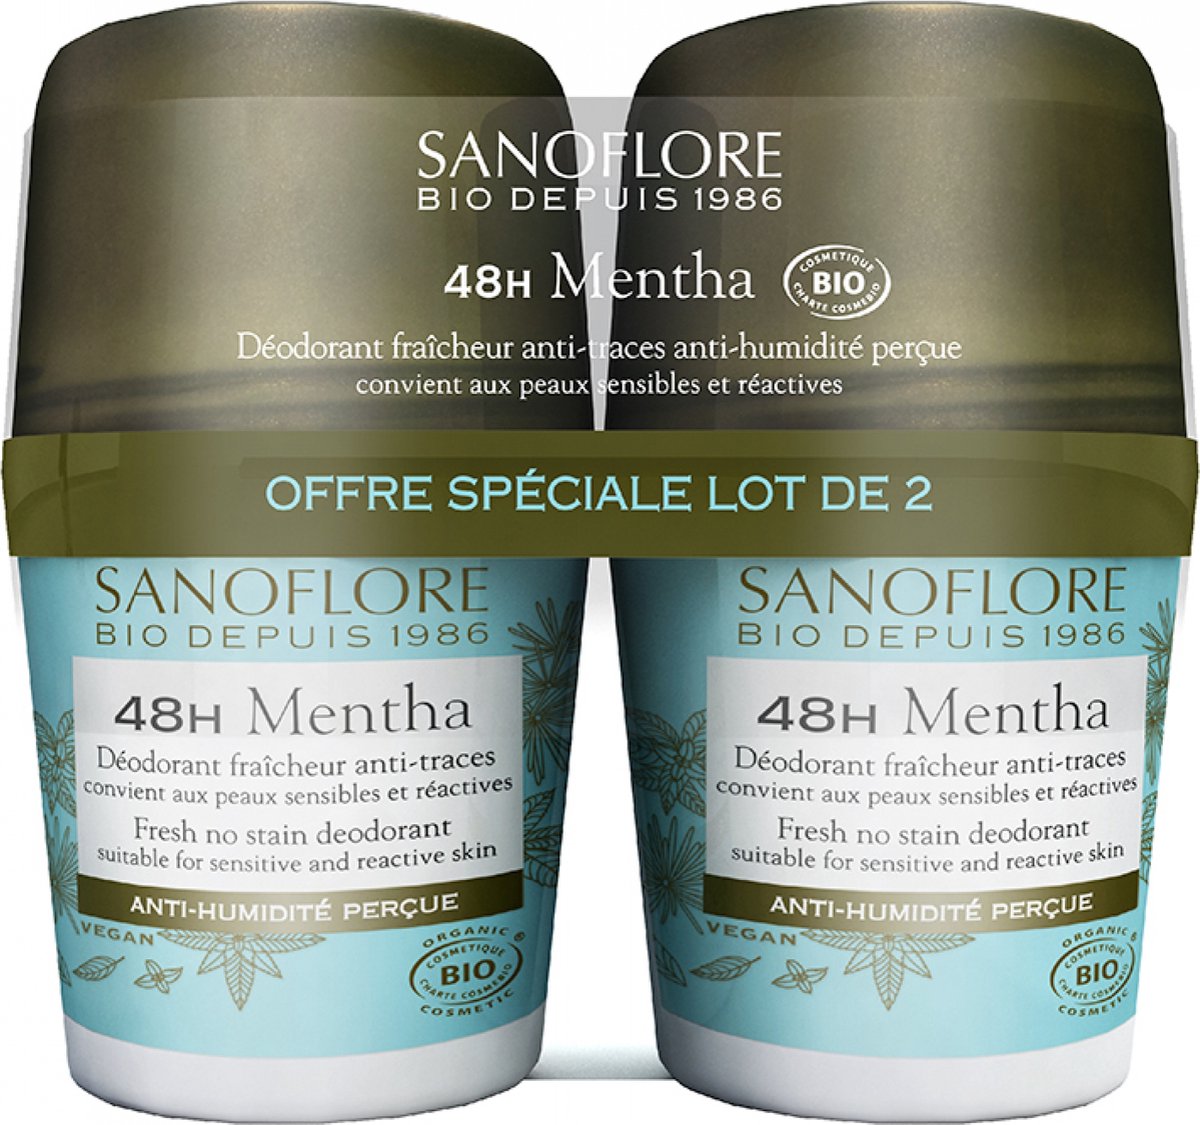 Sanoflore 48H Mentha Organic Anti-Trauma Frisheid Deodorant Set van 2 x 50 ml